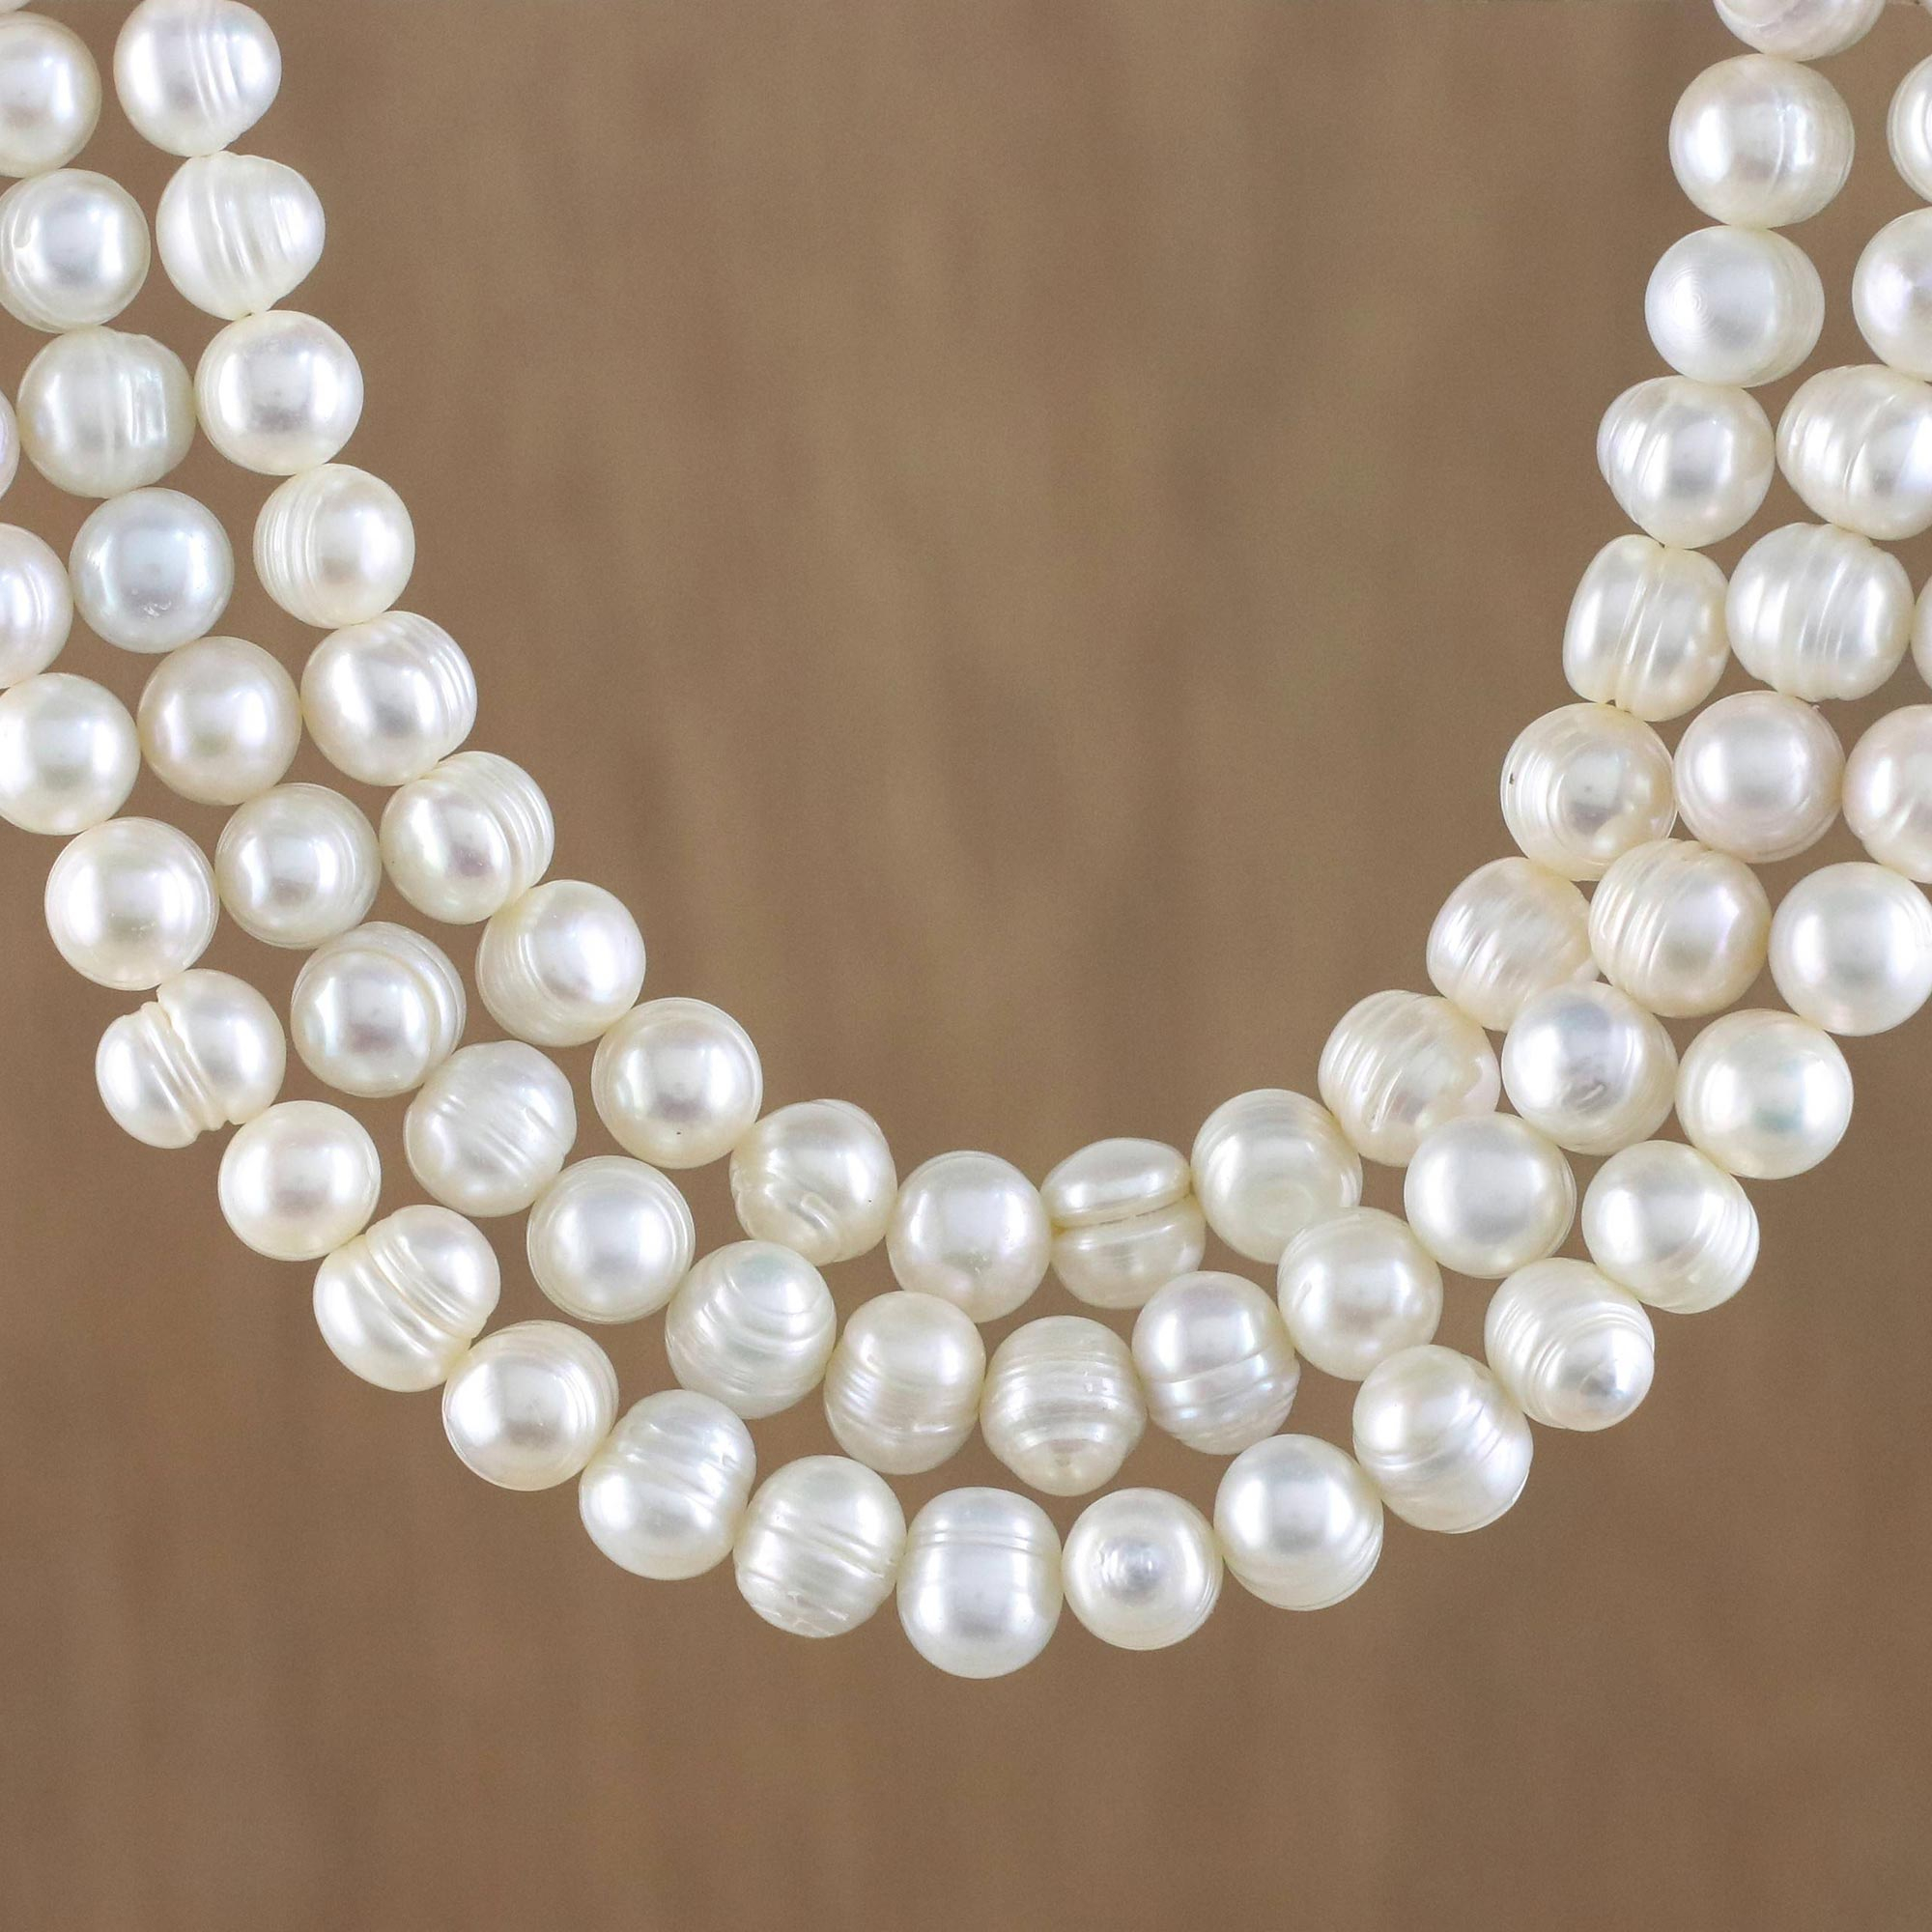 Collar tailandés de triple hilo de perlas blancas elaborado